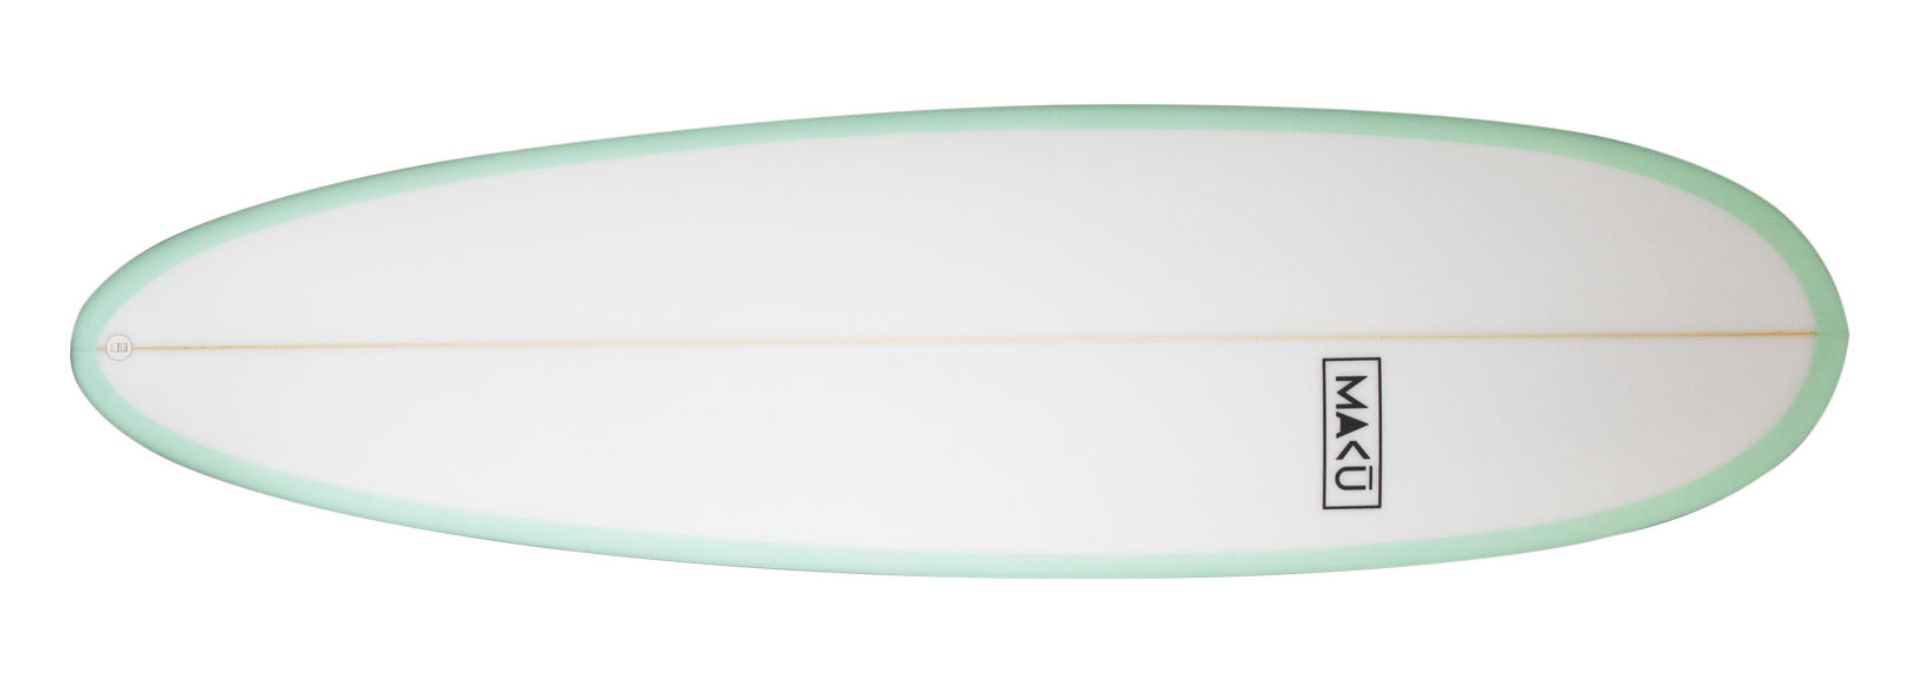 planche de surf de type funboard: un egg